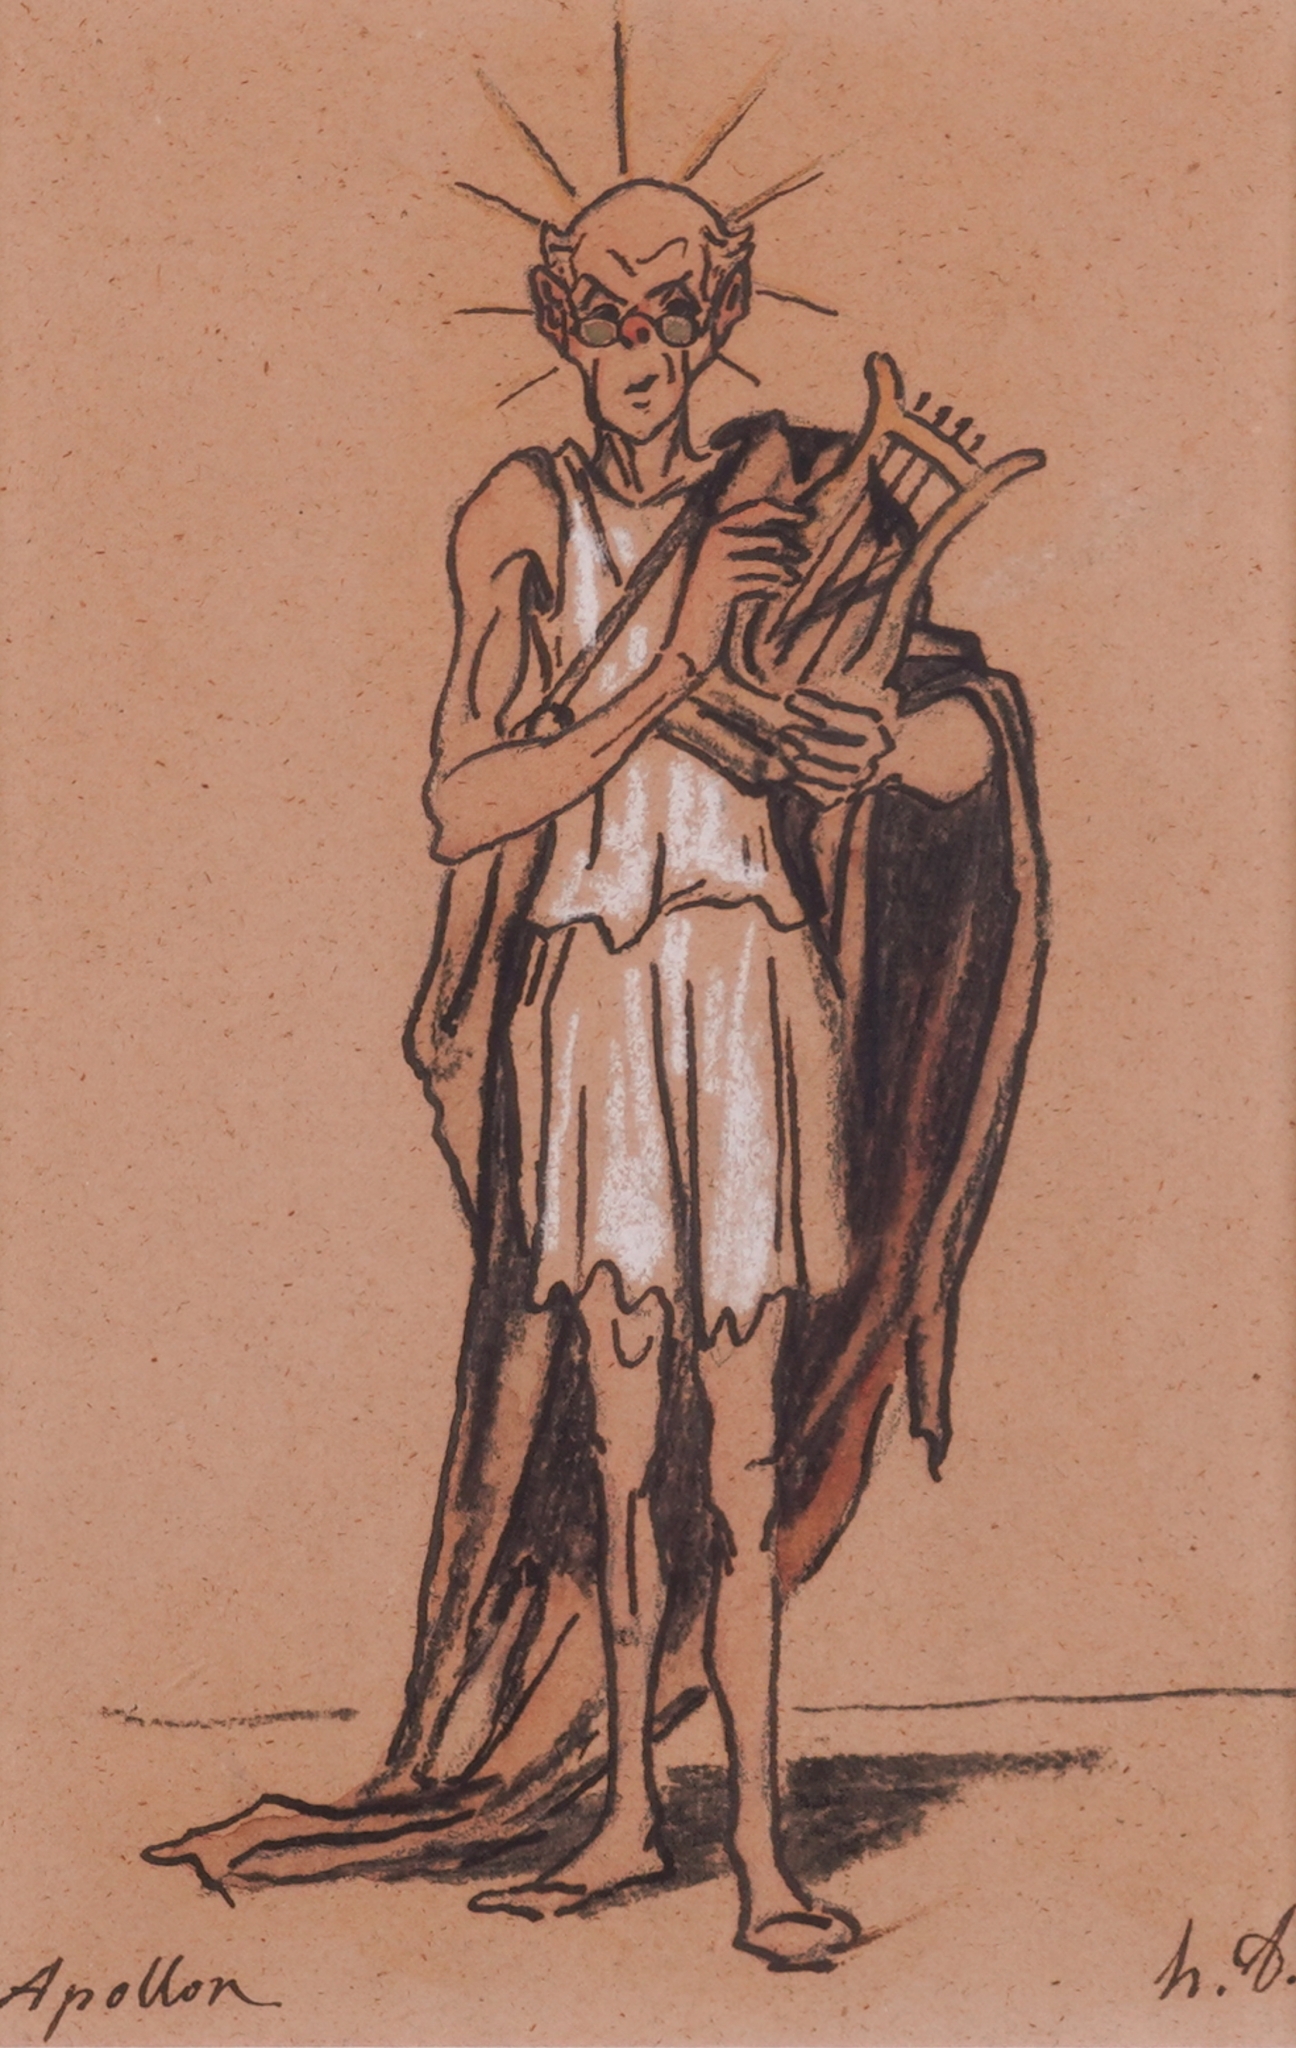 HONORÉ DAUMIER (FRENCH, 1808-1879) Apollon